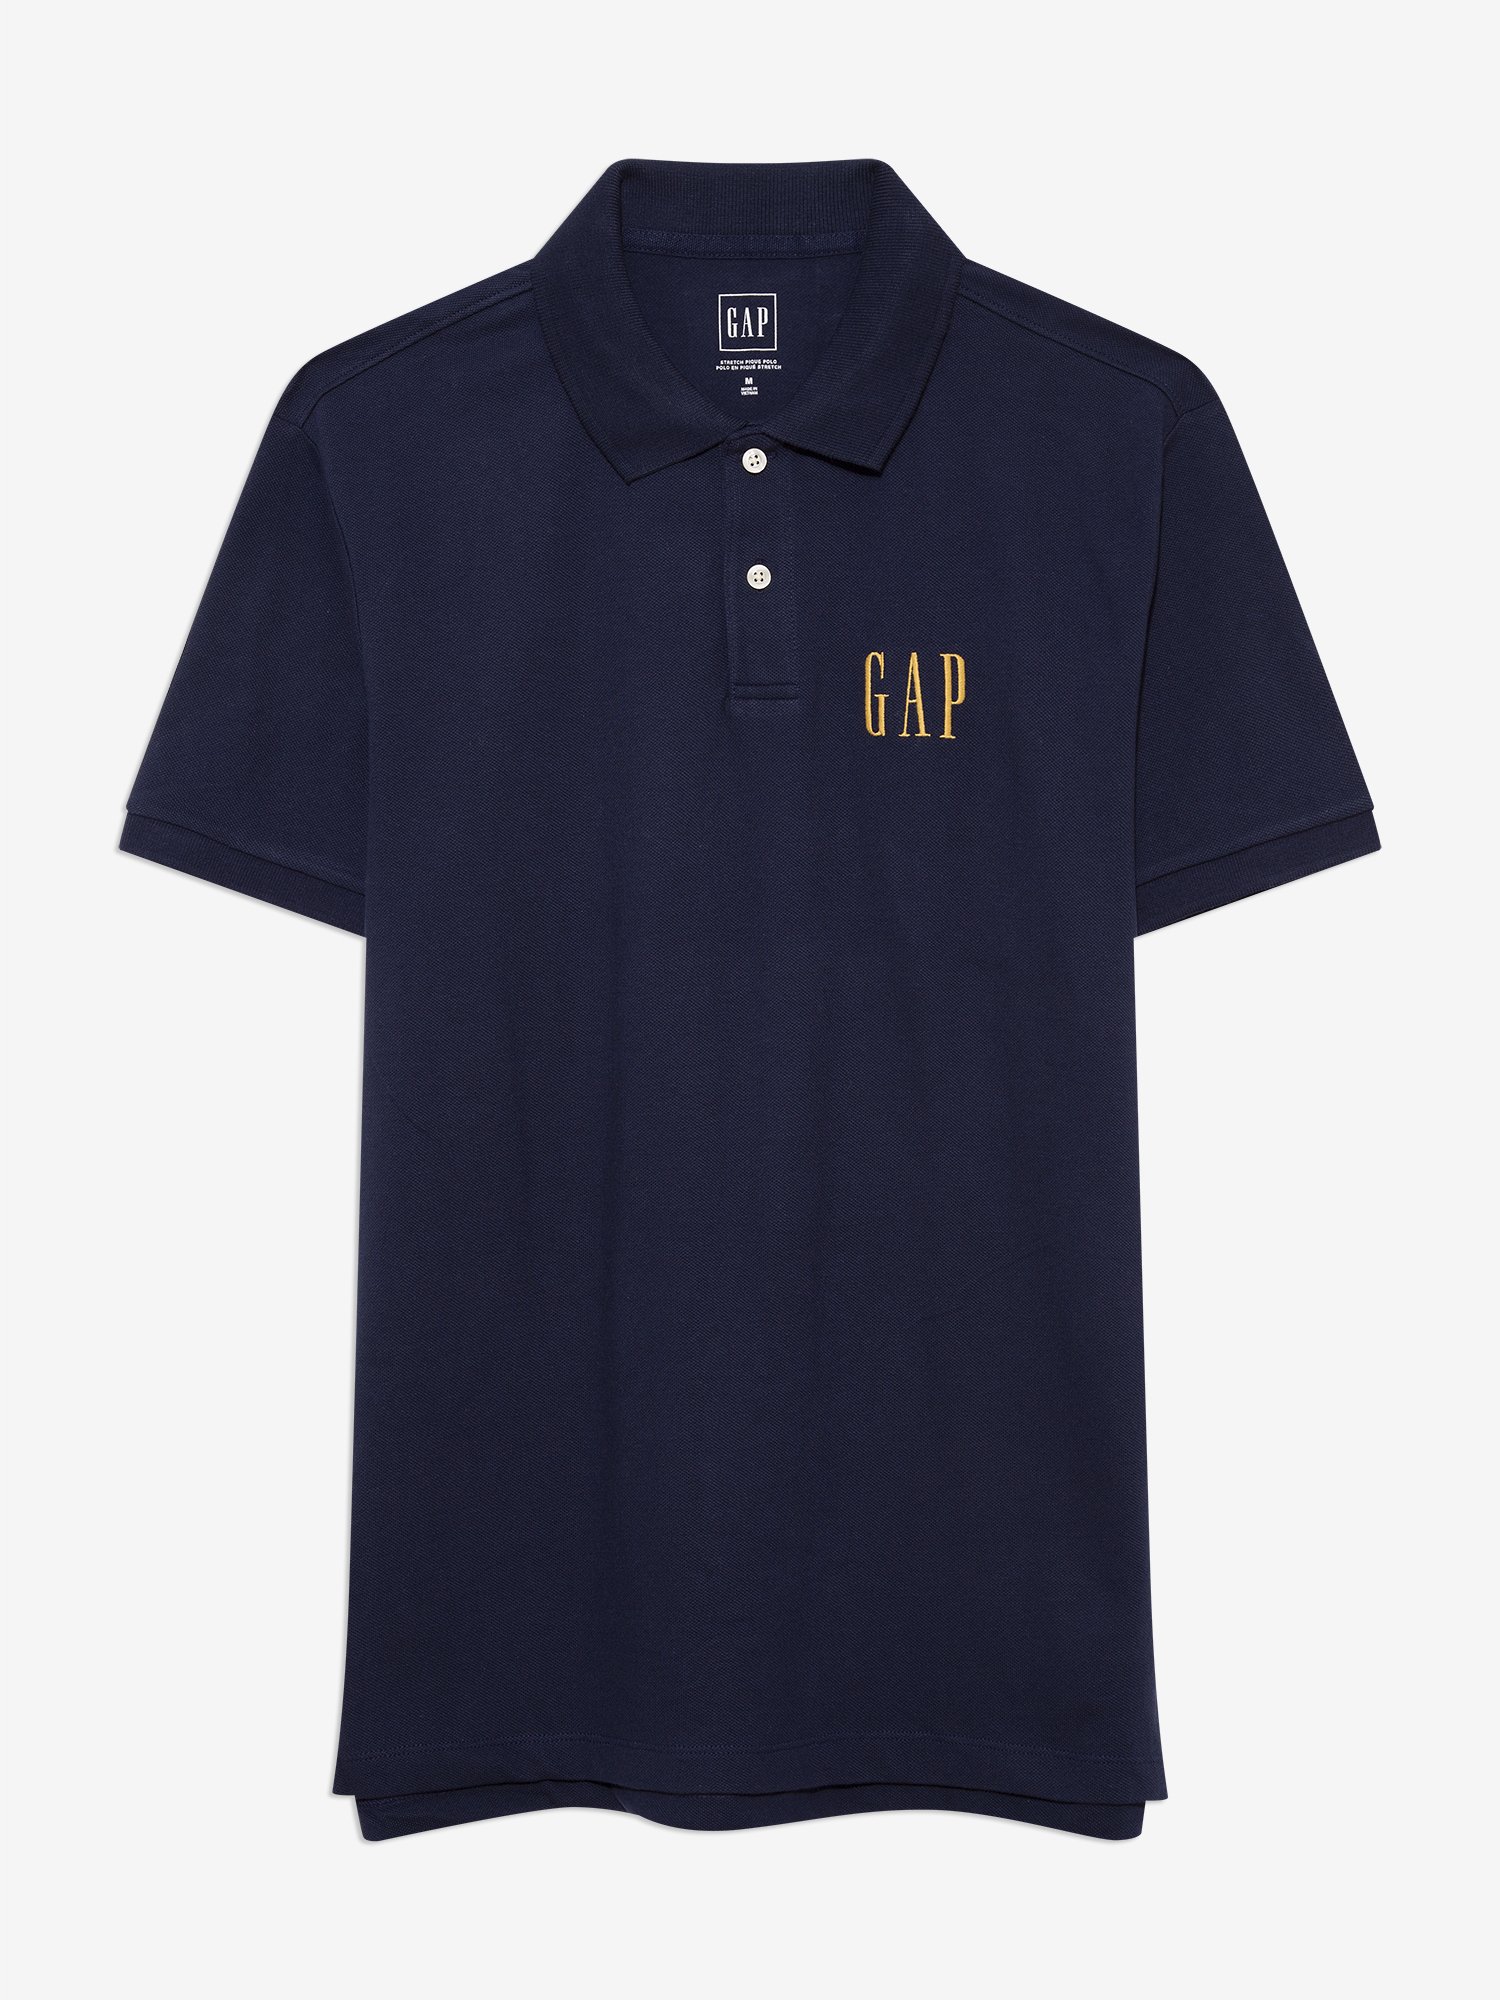 Gap Logo Polo Shirt product image